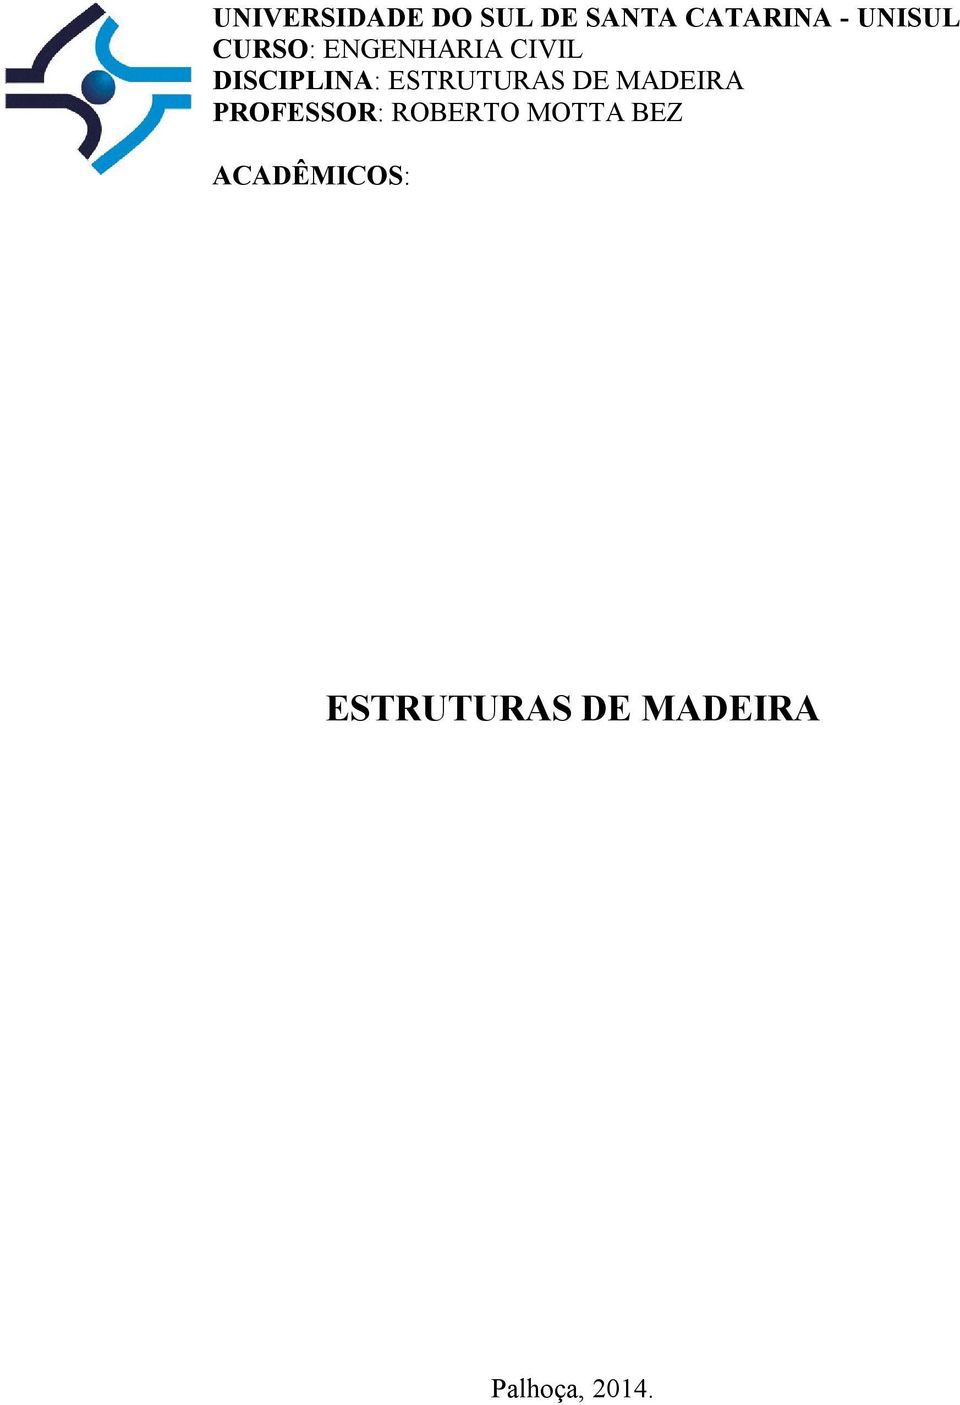 ESTRUTURAS DE MADEIRA PROFESSOR: ROBERTO